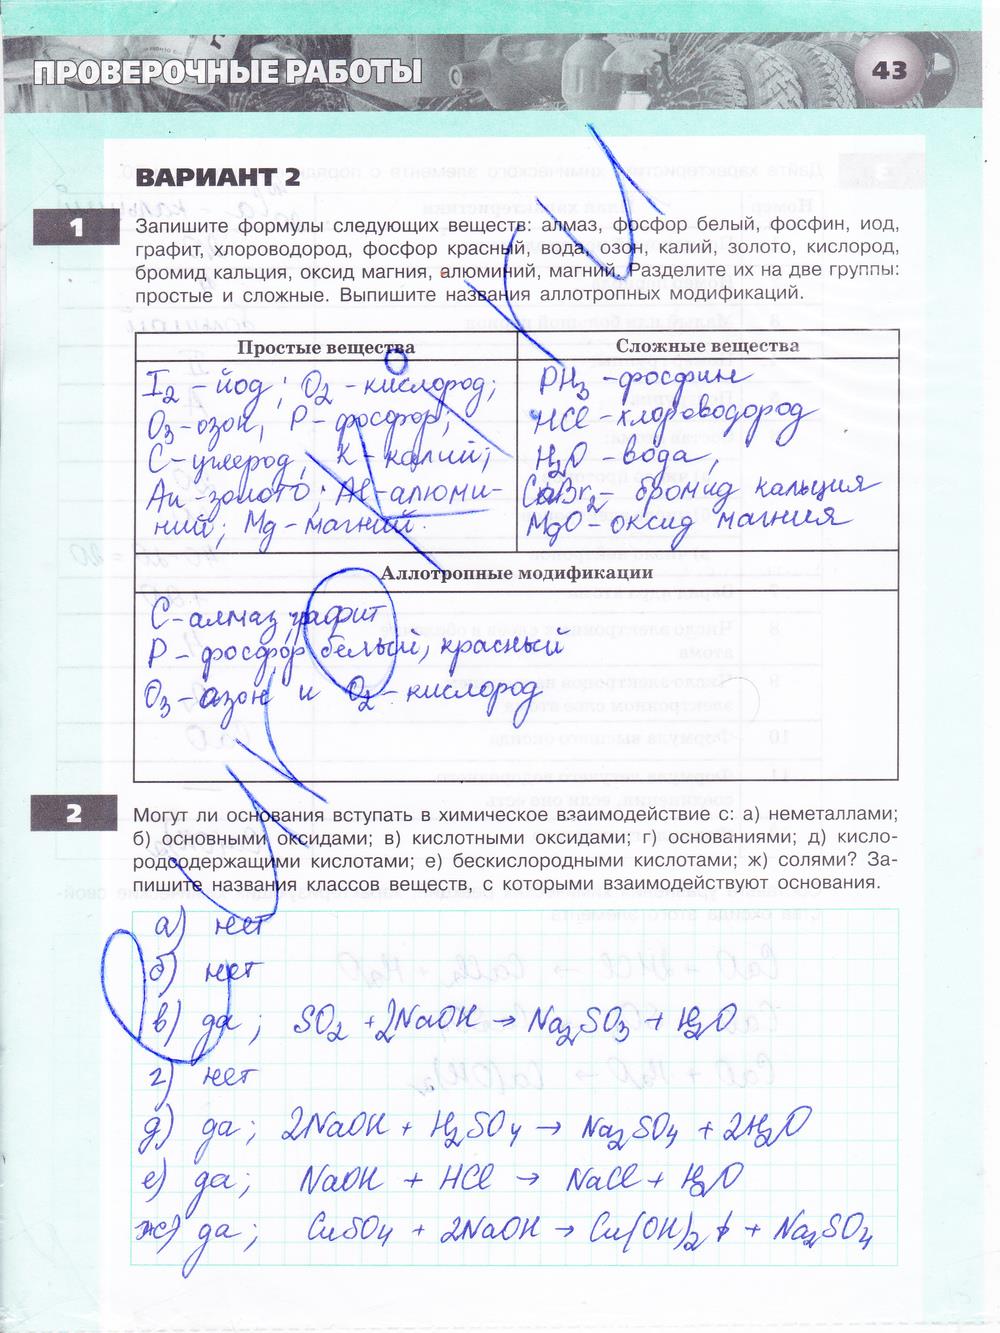 гдз 8 класс тетрадь-экзаменатор страница 43 химия Бобылева, Бирюлина